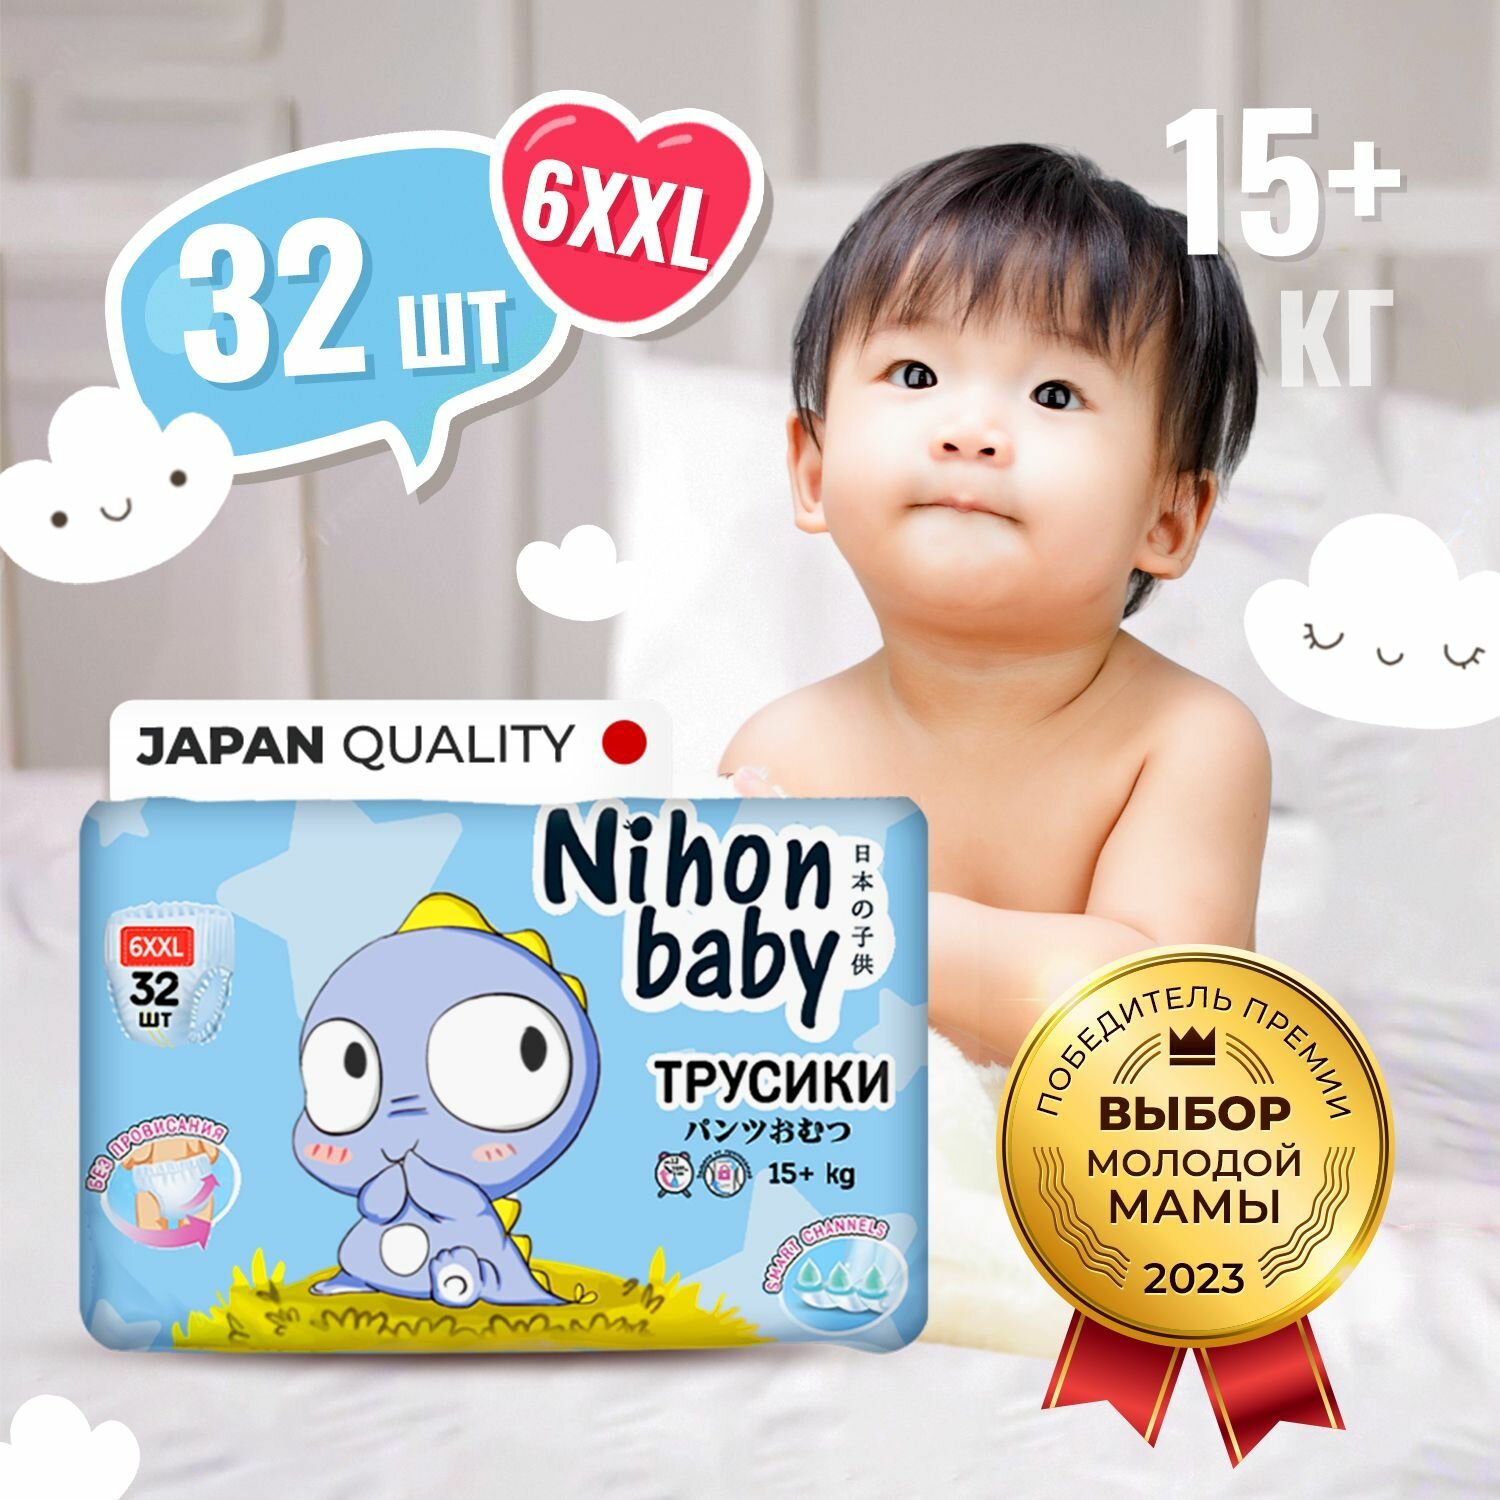 Nihon baby Подгузники трусики 6 размер детские, ХХL (15+ кг), 32 шт